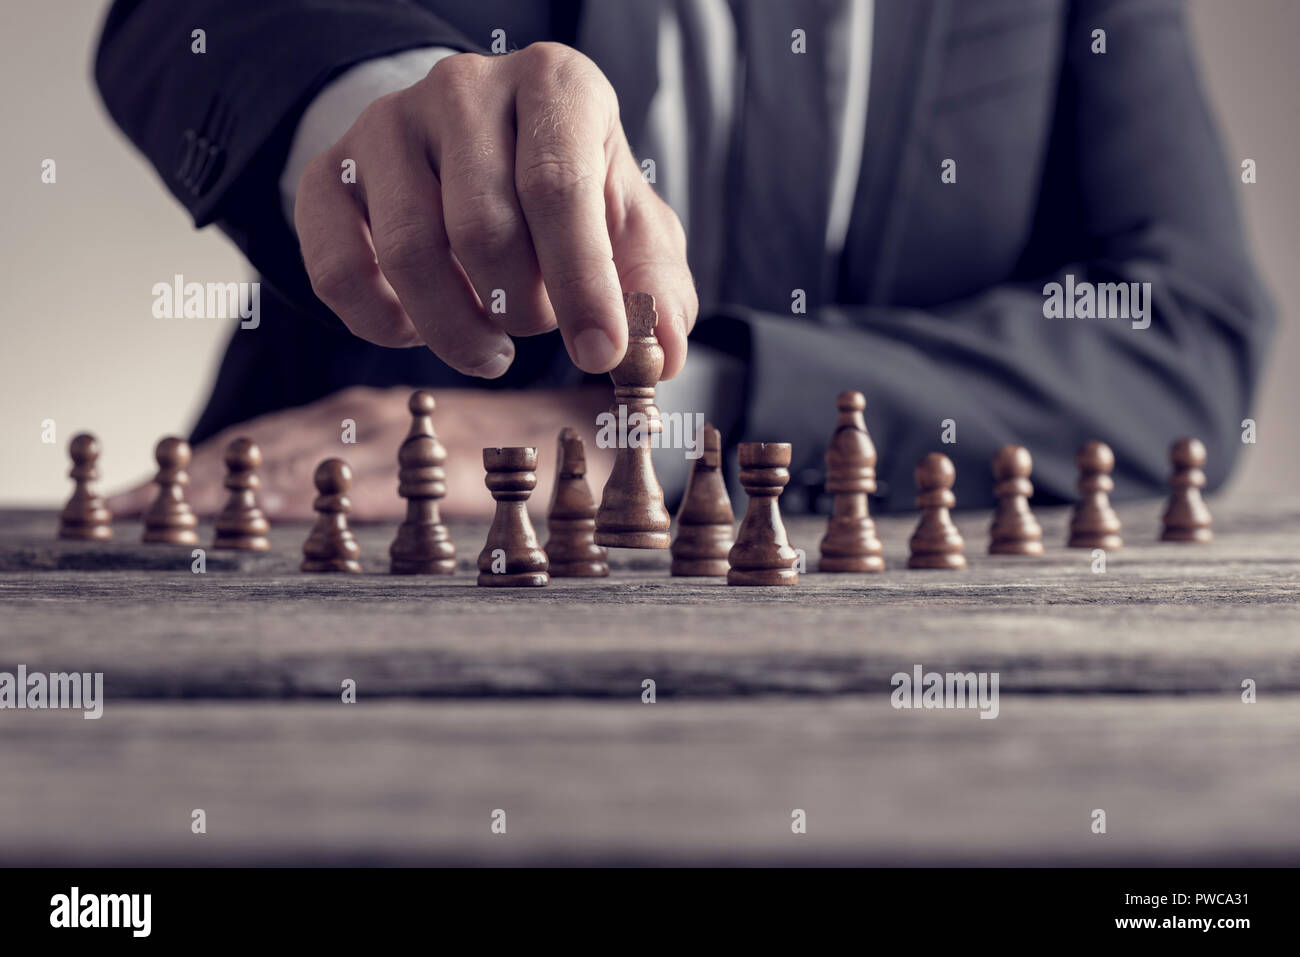 Retro Style Bild von einem Geschäftsmann spielen eine Partie Schach auf  einem alten Holztisch in der Nähe zu sehen, der seine Hand bewegt ein Stück  konzeptionelle Strategie Stockfotografie - Alamy